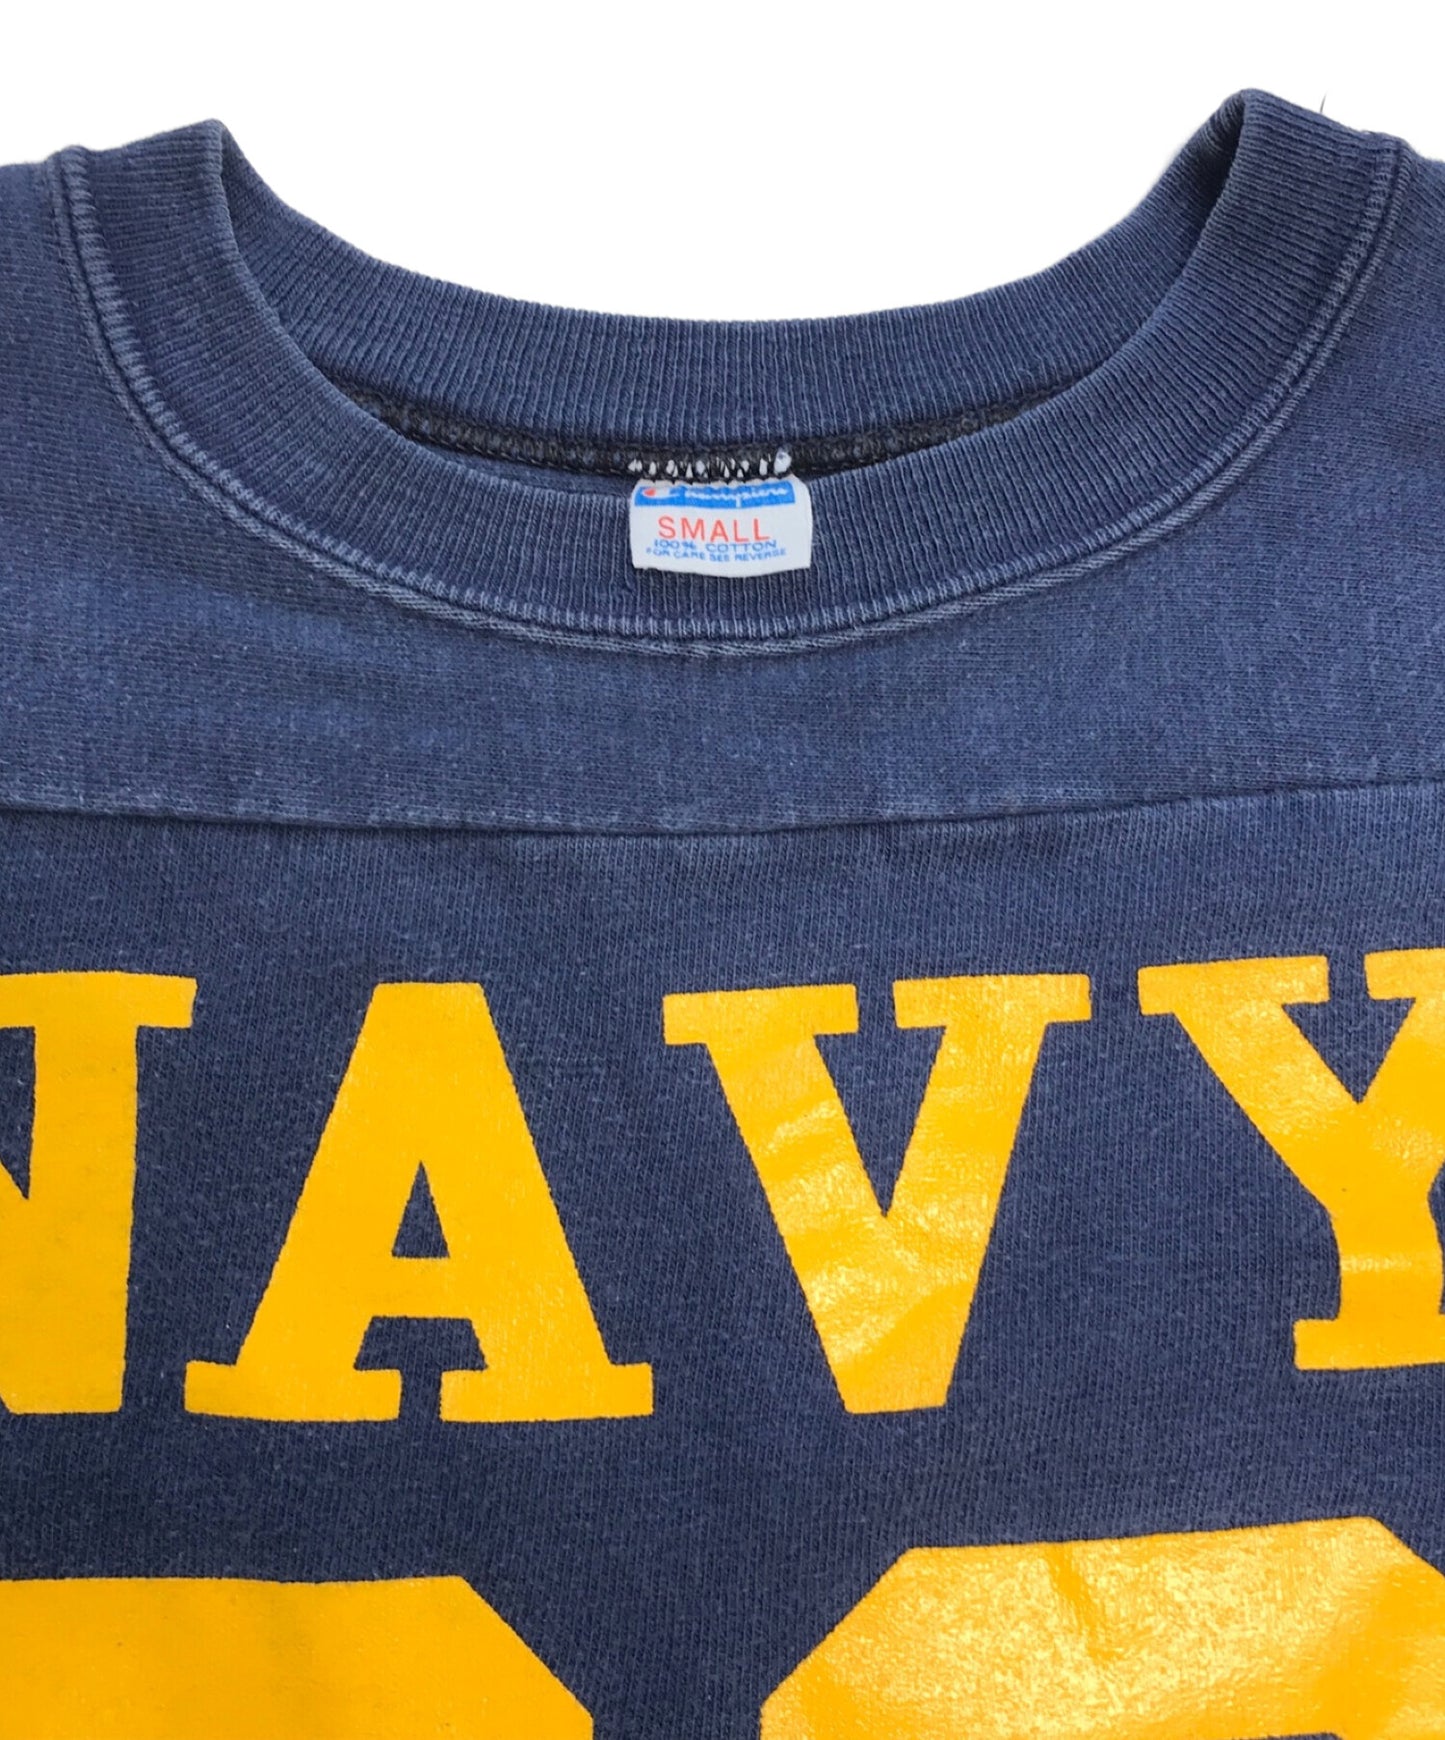 冠军70年代美国海军足球T恤